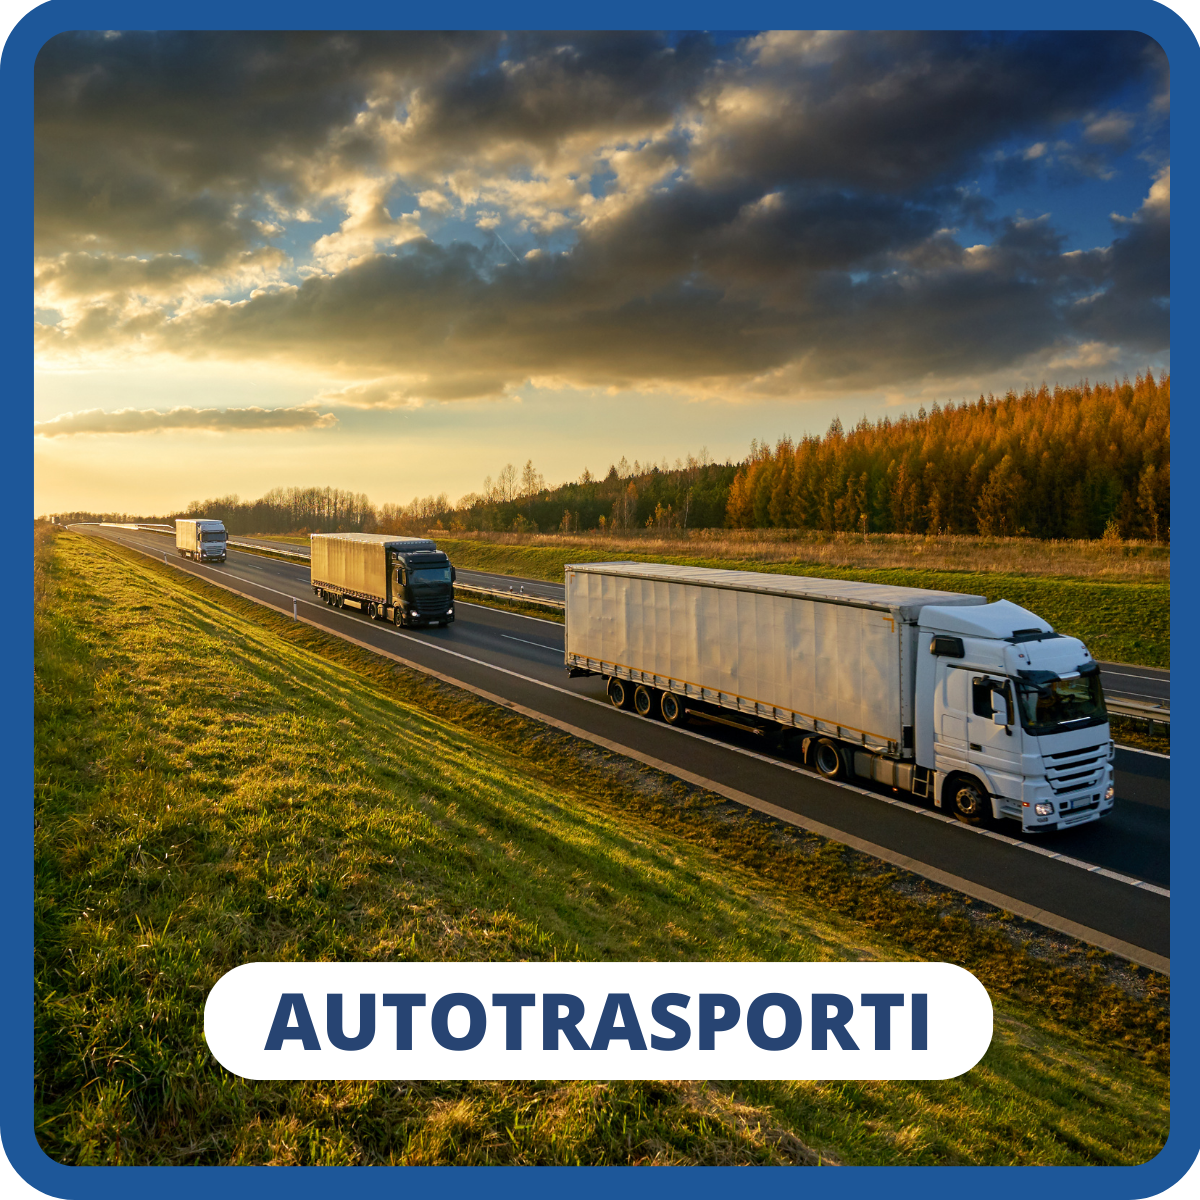 Autotrasporti incentivi veicoli ecologici detrazioni deduzioni CCNL logistica spedizioni trasporti bonus gasolio accise pedaggi autostradali